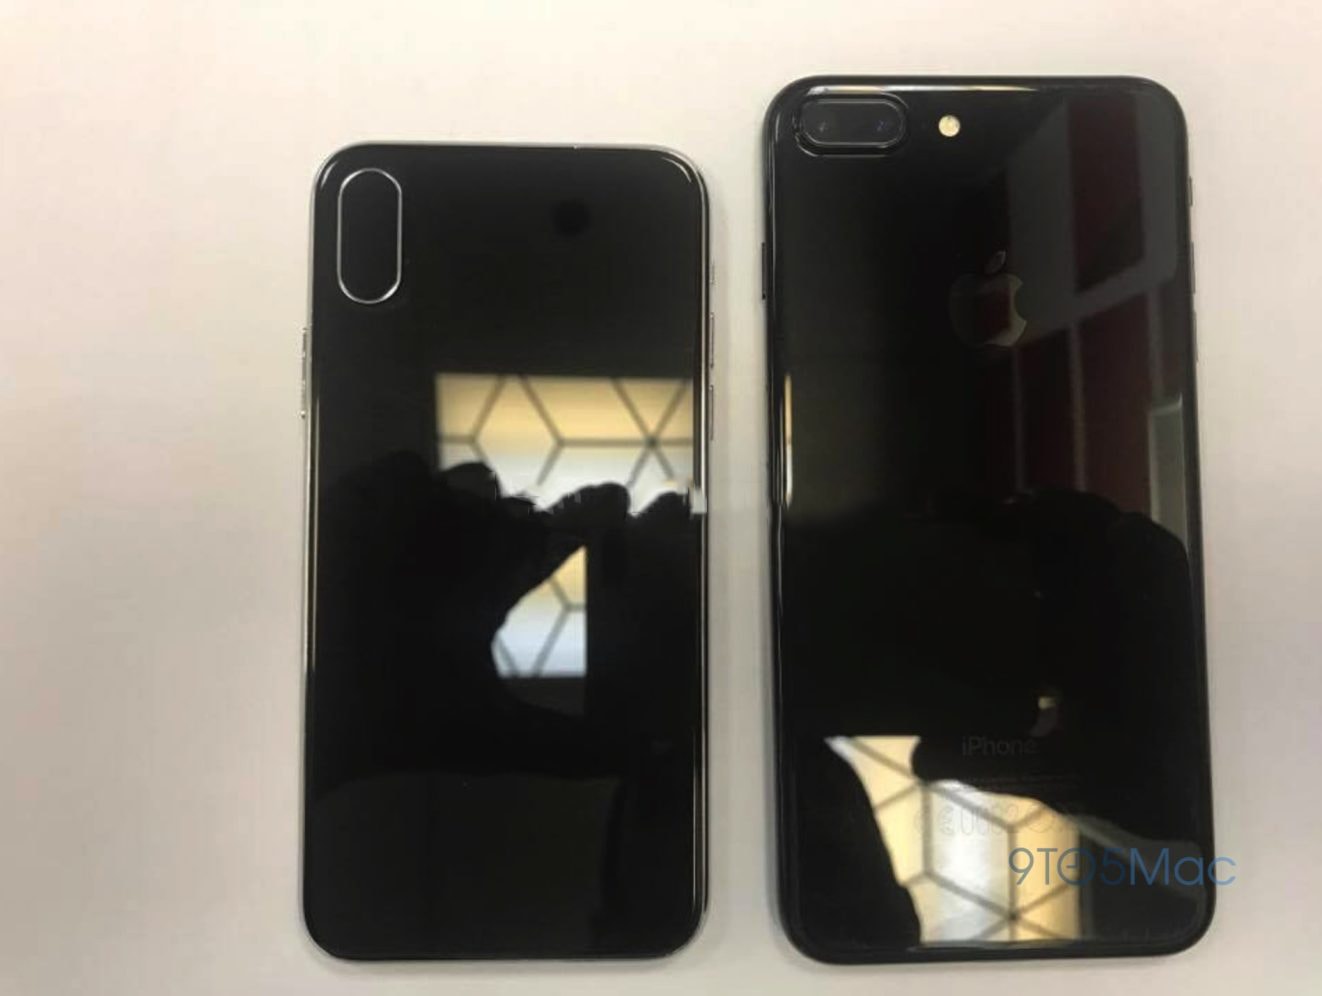 iPhone 8 Apple Design Leak